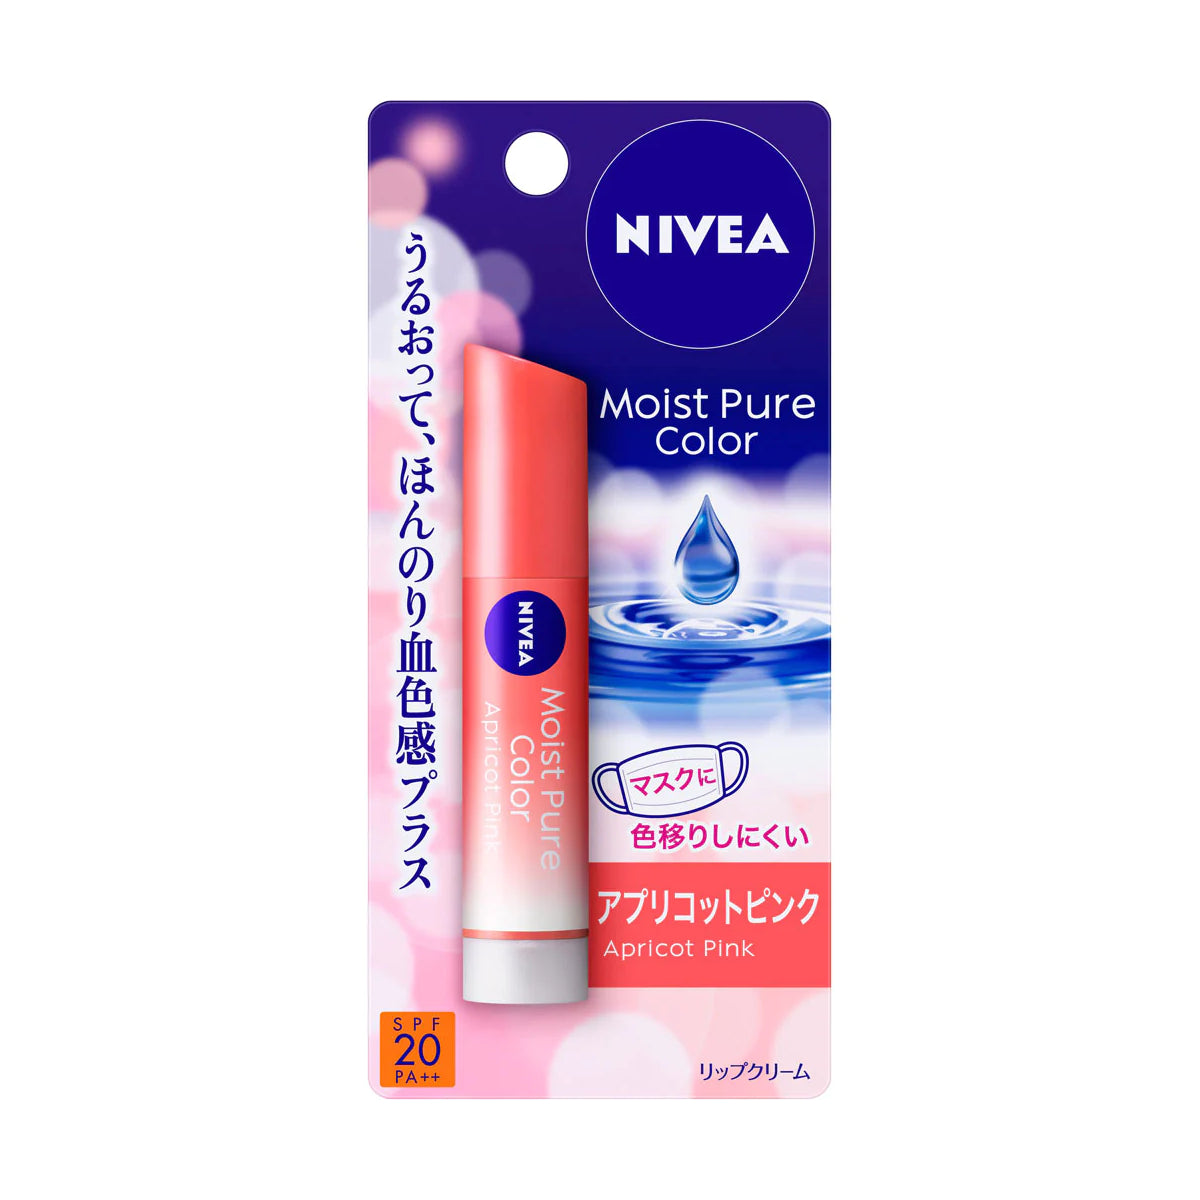 Nivea Japan Moist Pure Color Lip Balm SPF 20 PA++ Apricot Pink Beauty Nivea Japan   